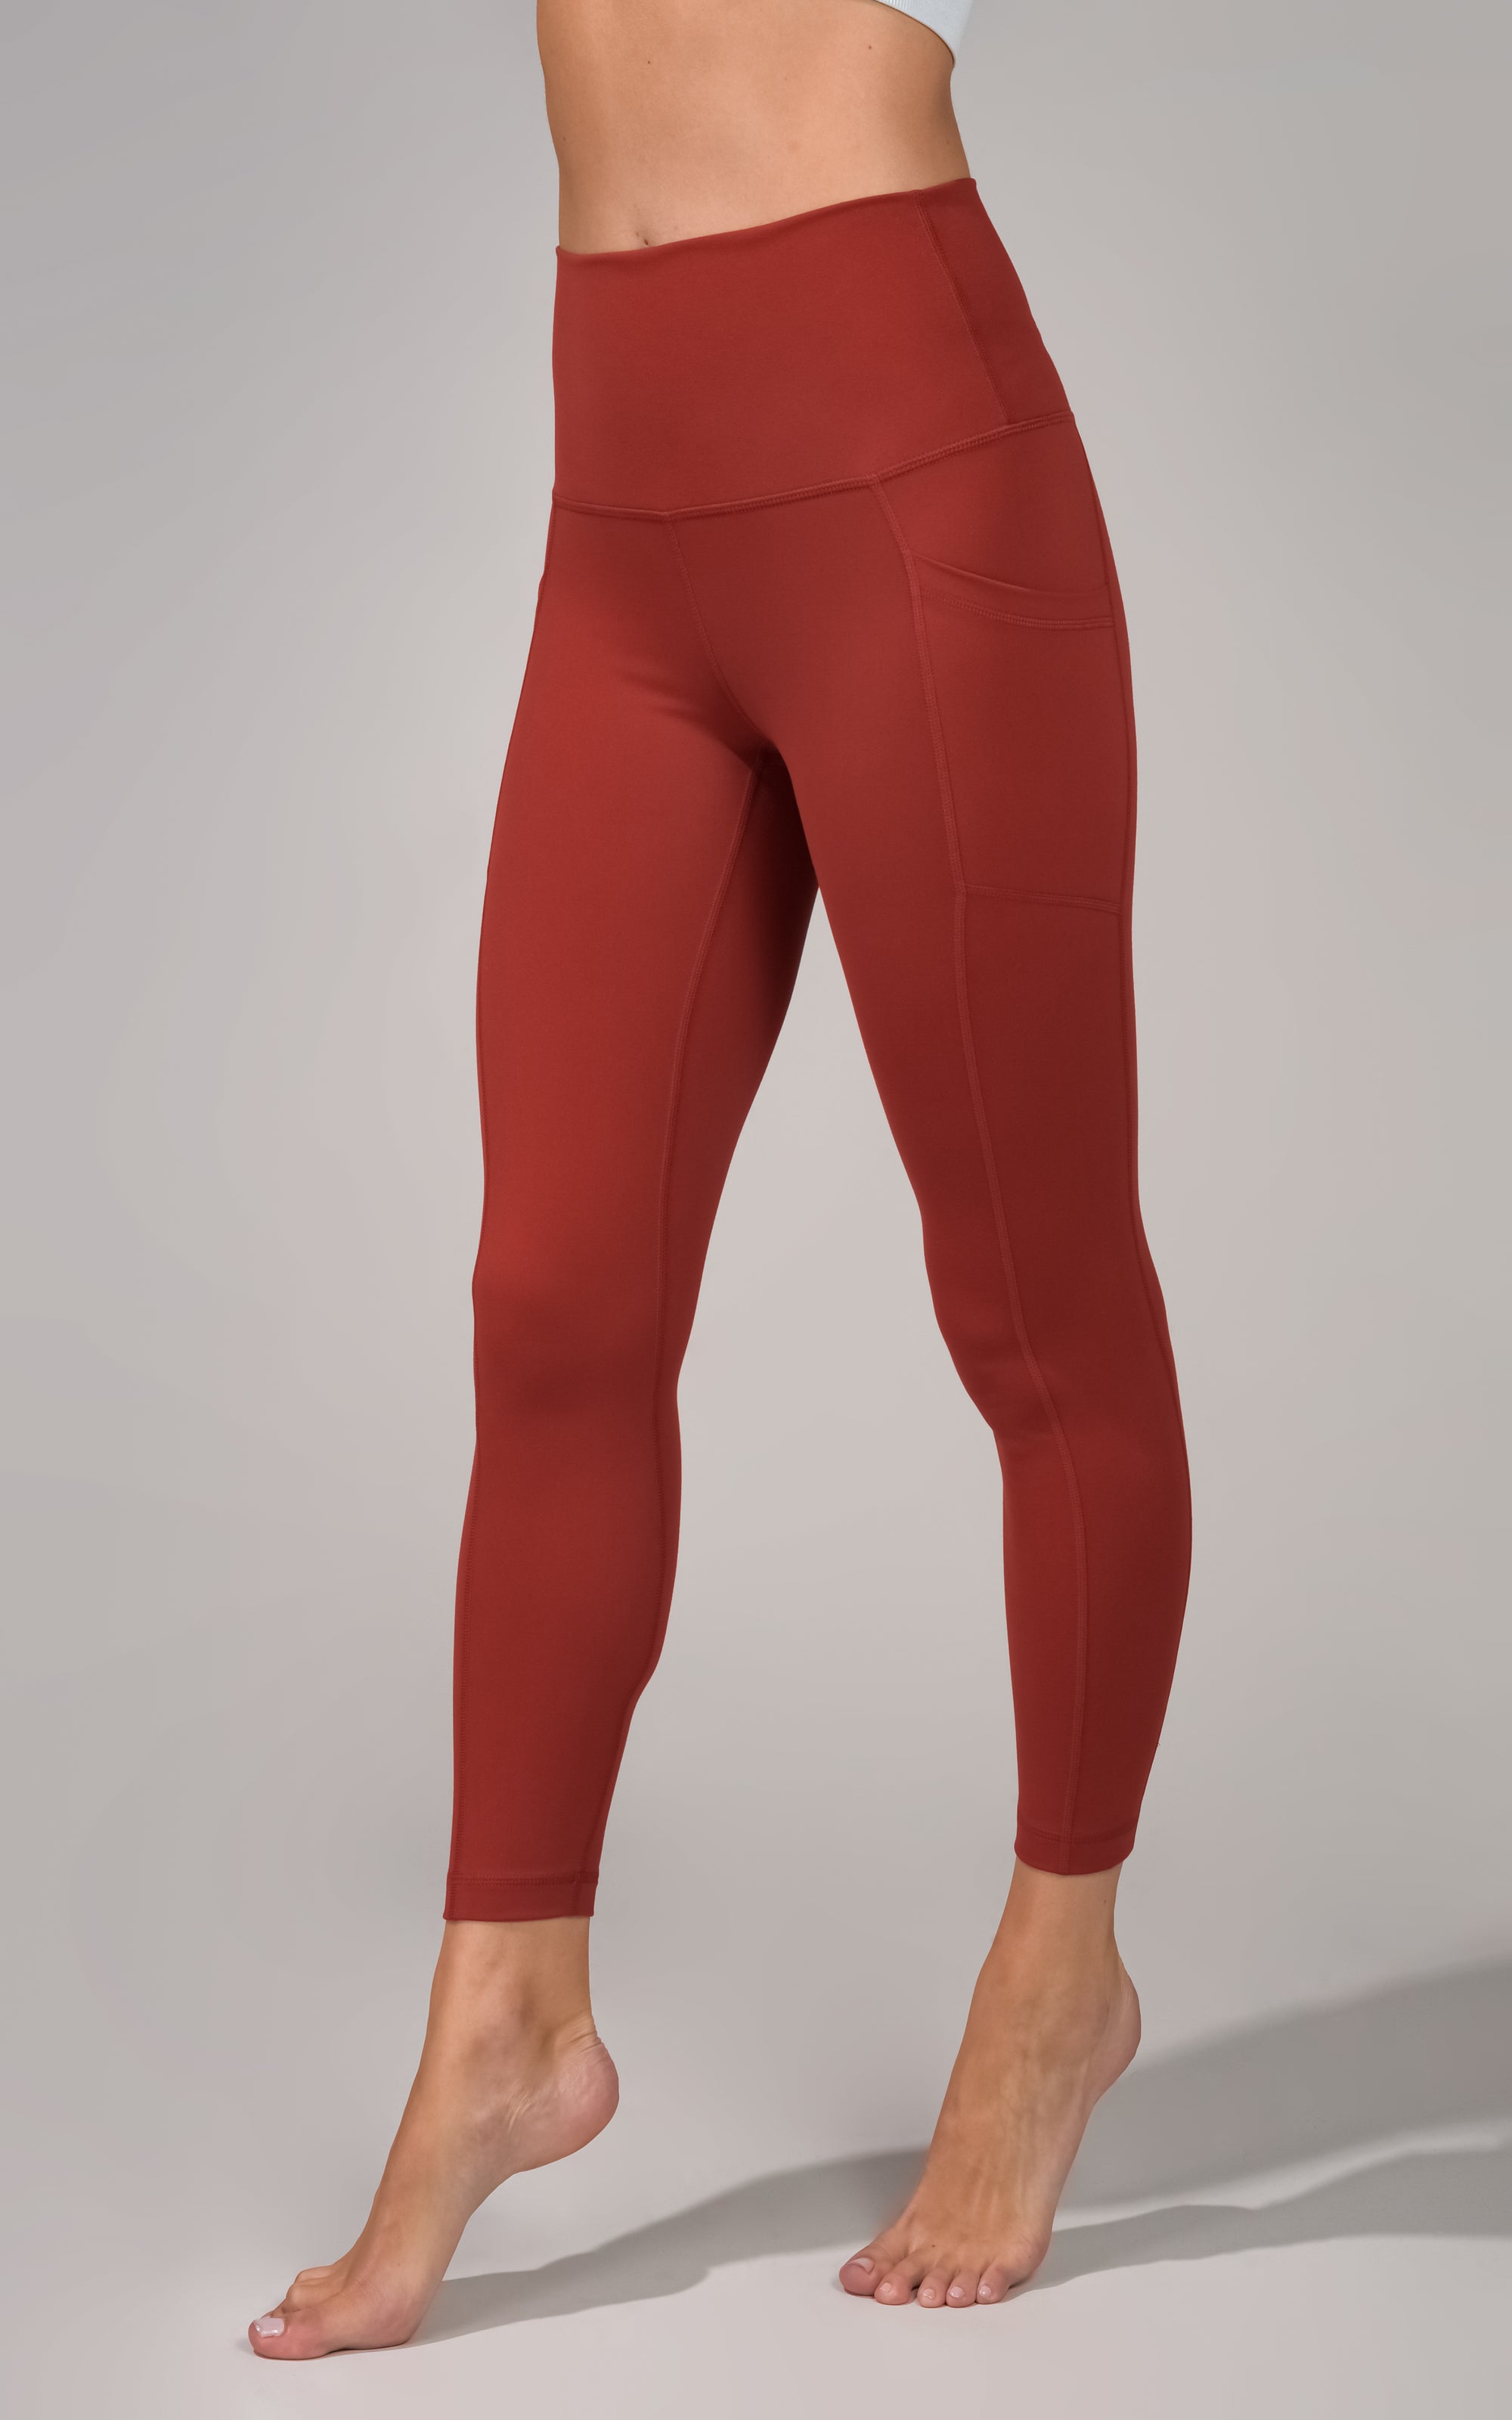 Red Orange Tie Dye Women Leggings Side Pockets, Printed Yoga Pants